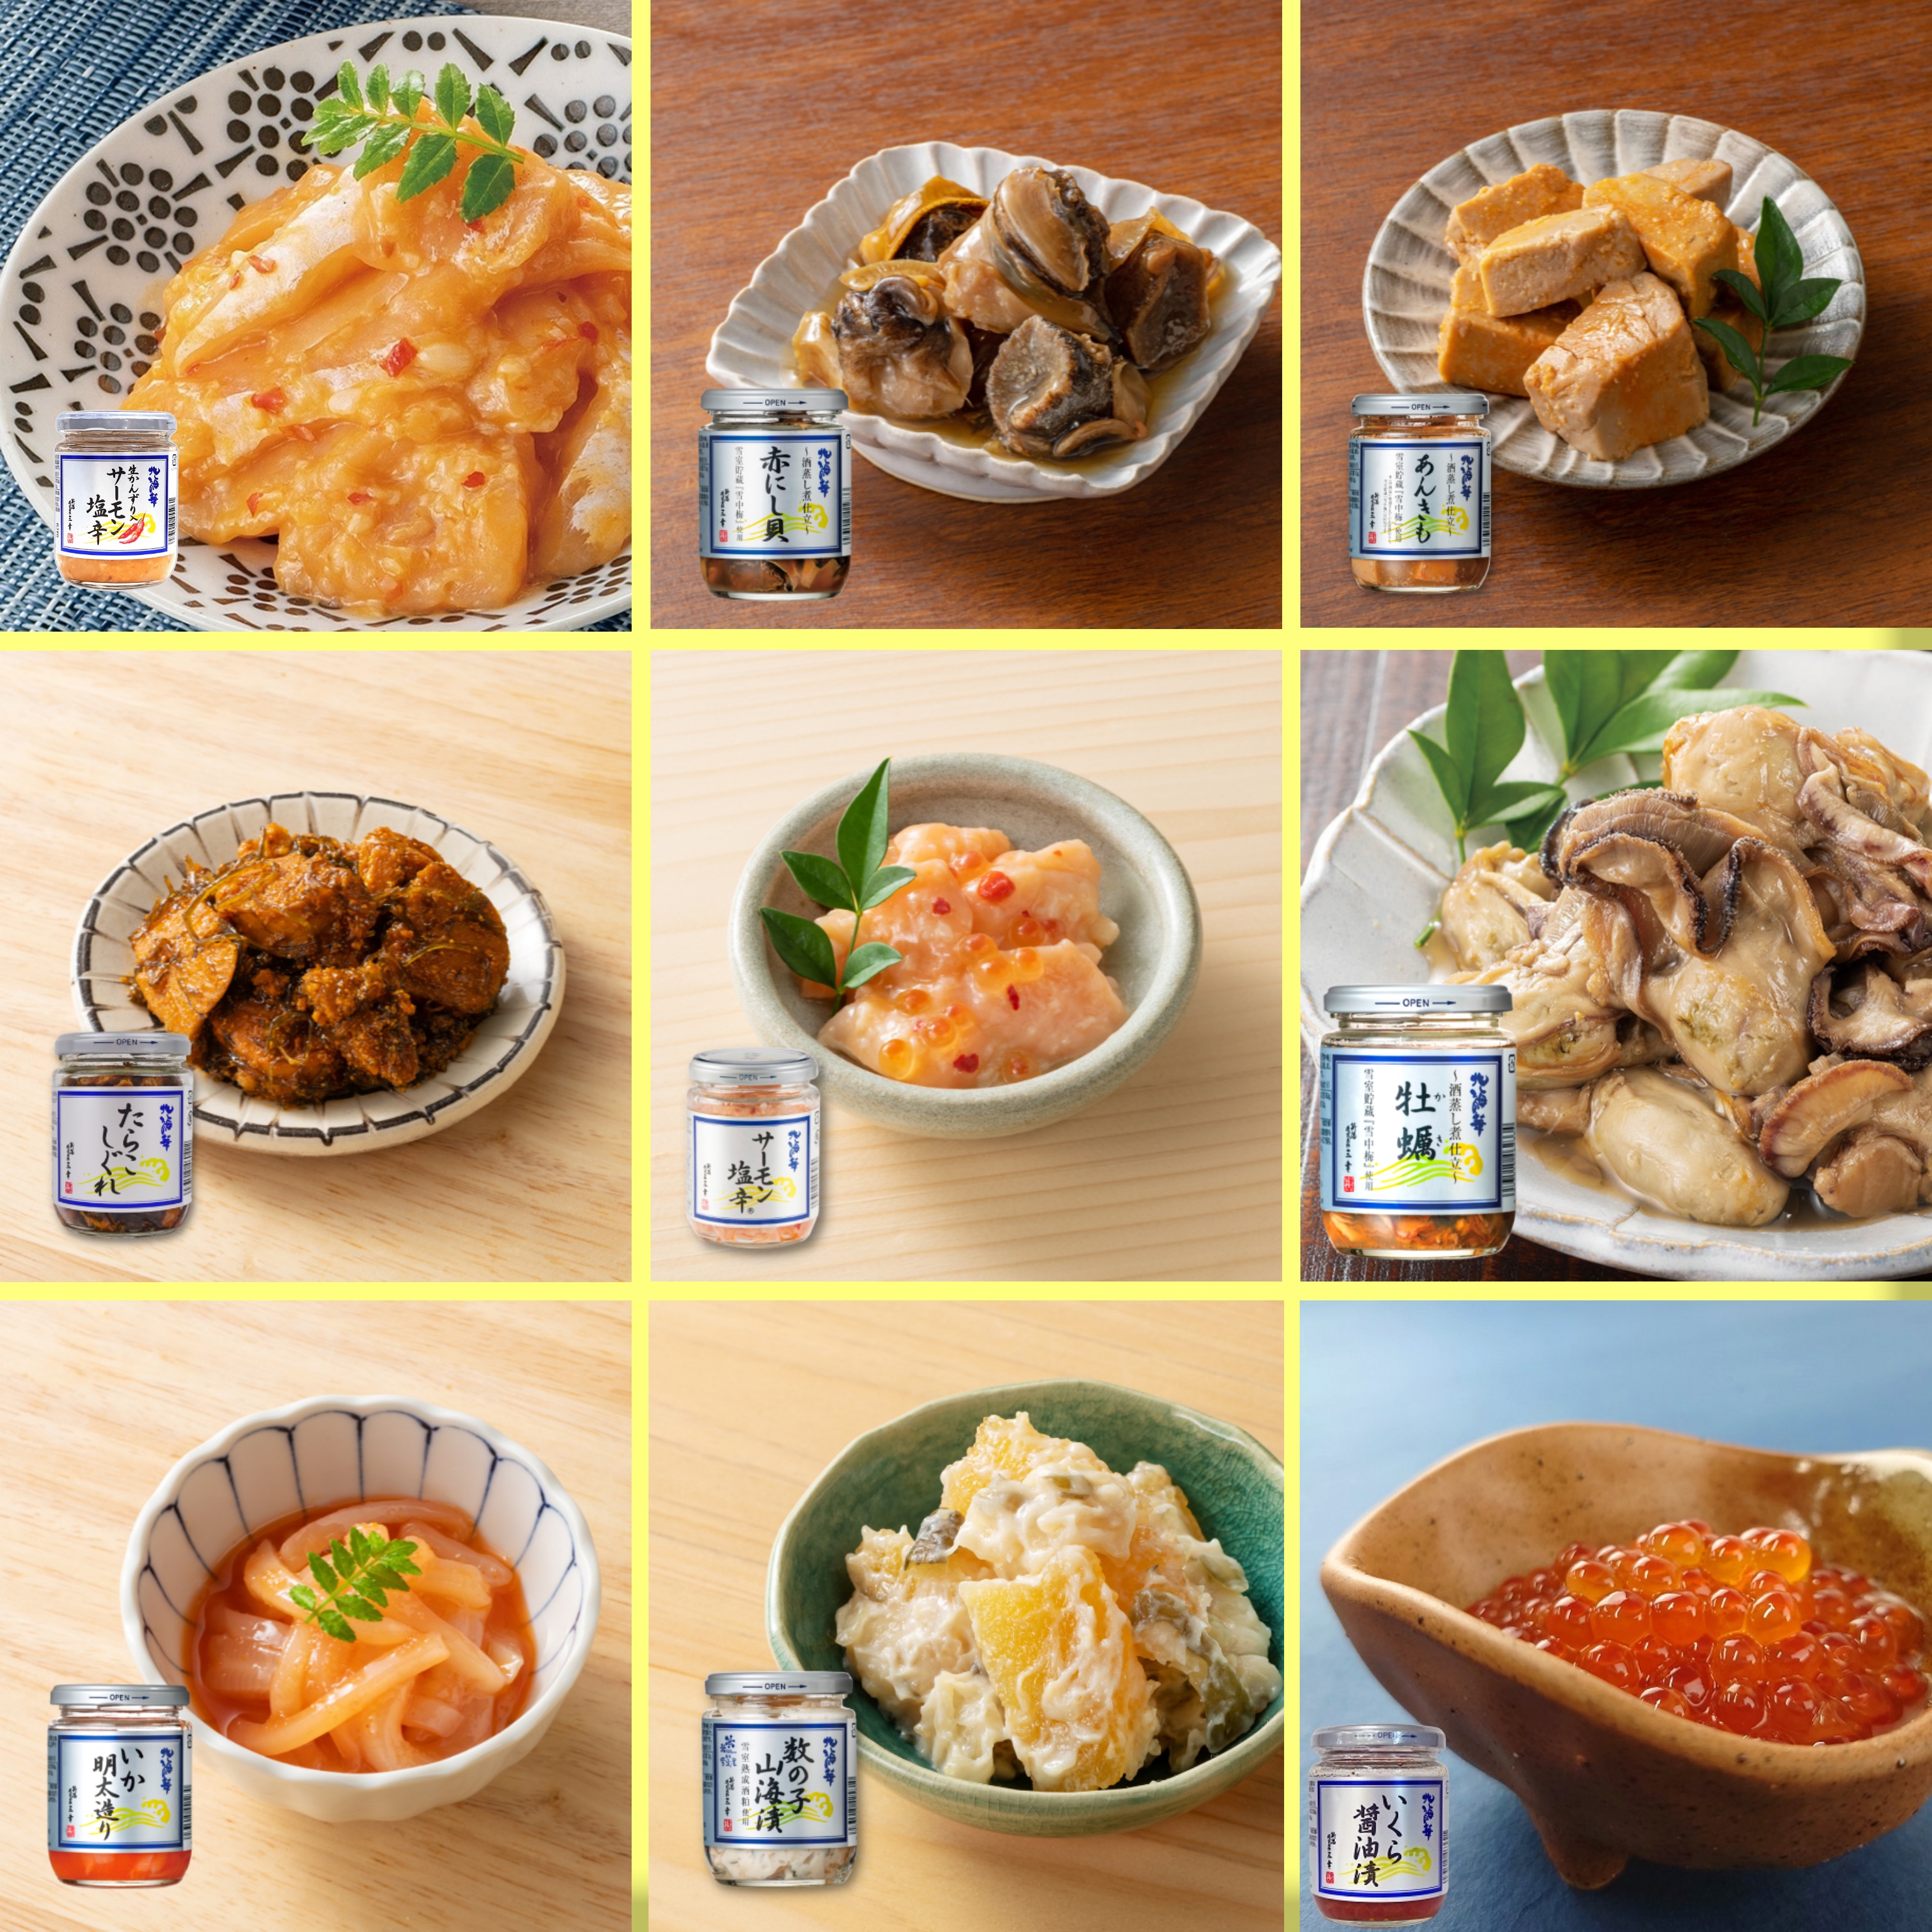  три . salmon соль .200g× 2 шт Niigata можно выбрать 2 шт глаз еда . сравнение комплект ваш заказ гурман TV. тема подарок salmon. соль .